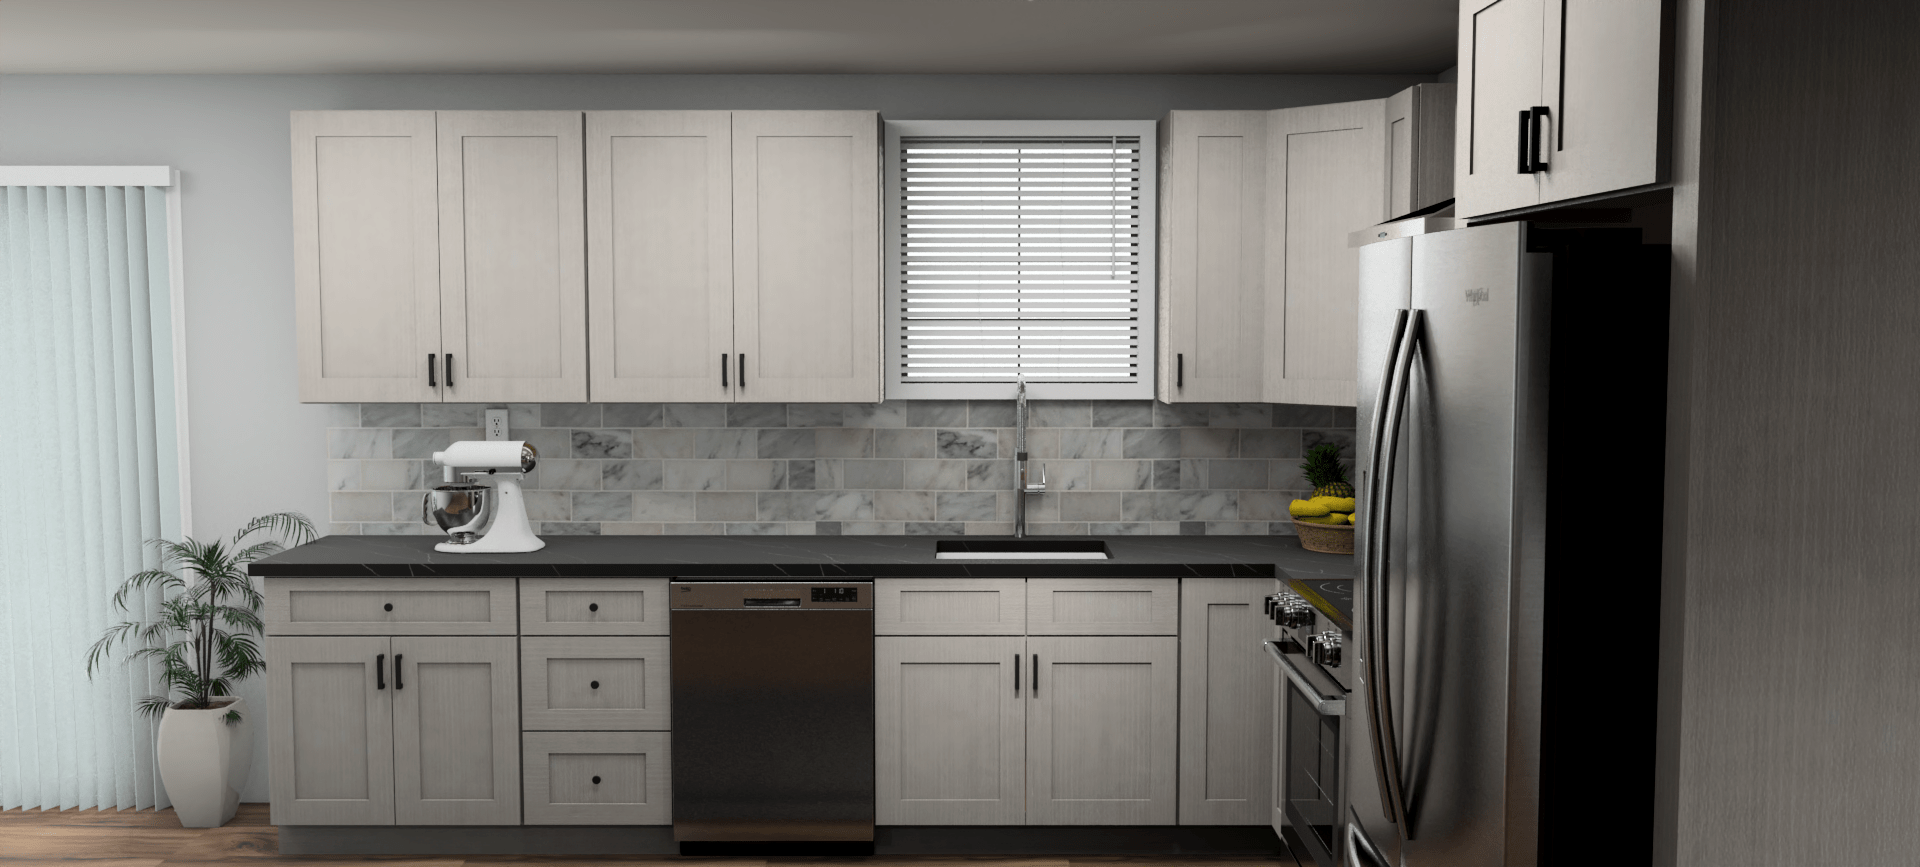 Fabuwood Allure Galaxy Horizon 12 x 11 L Shaped Kitchen Side Layout Photo